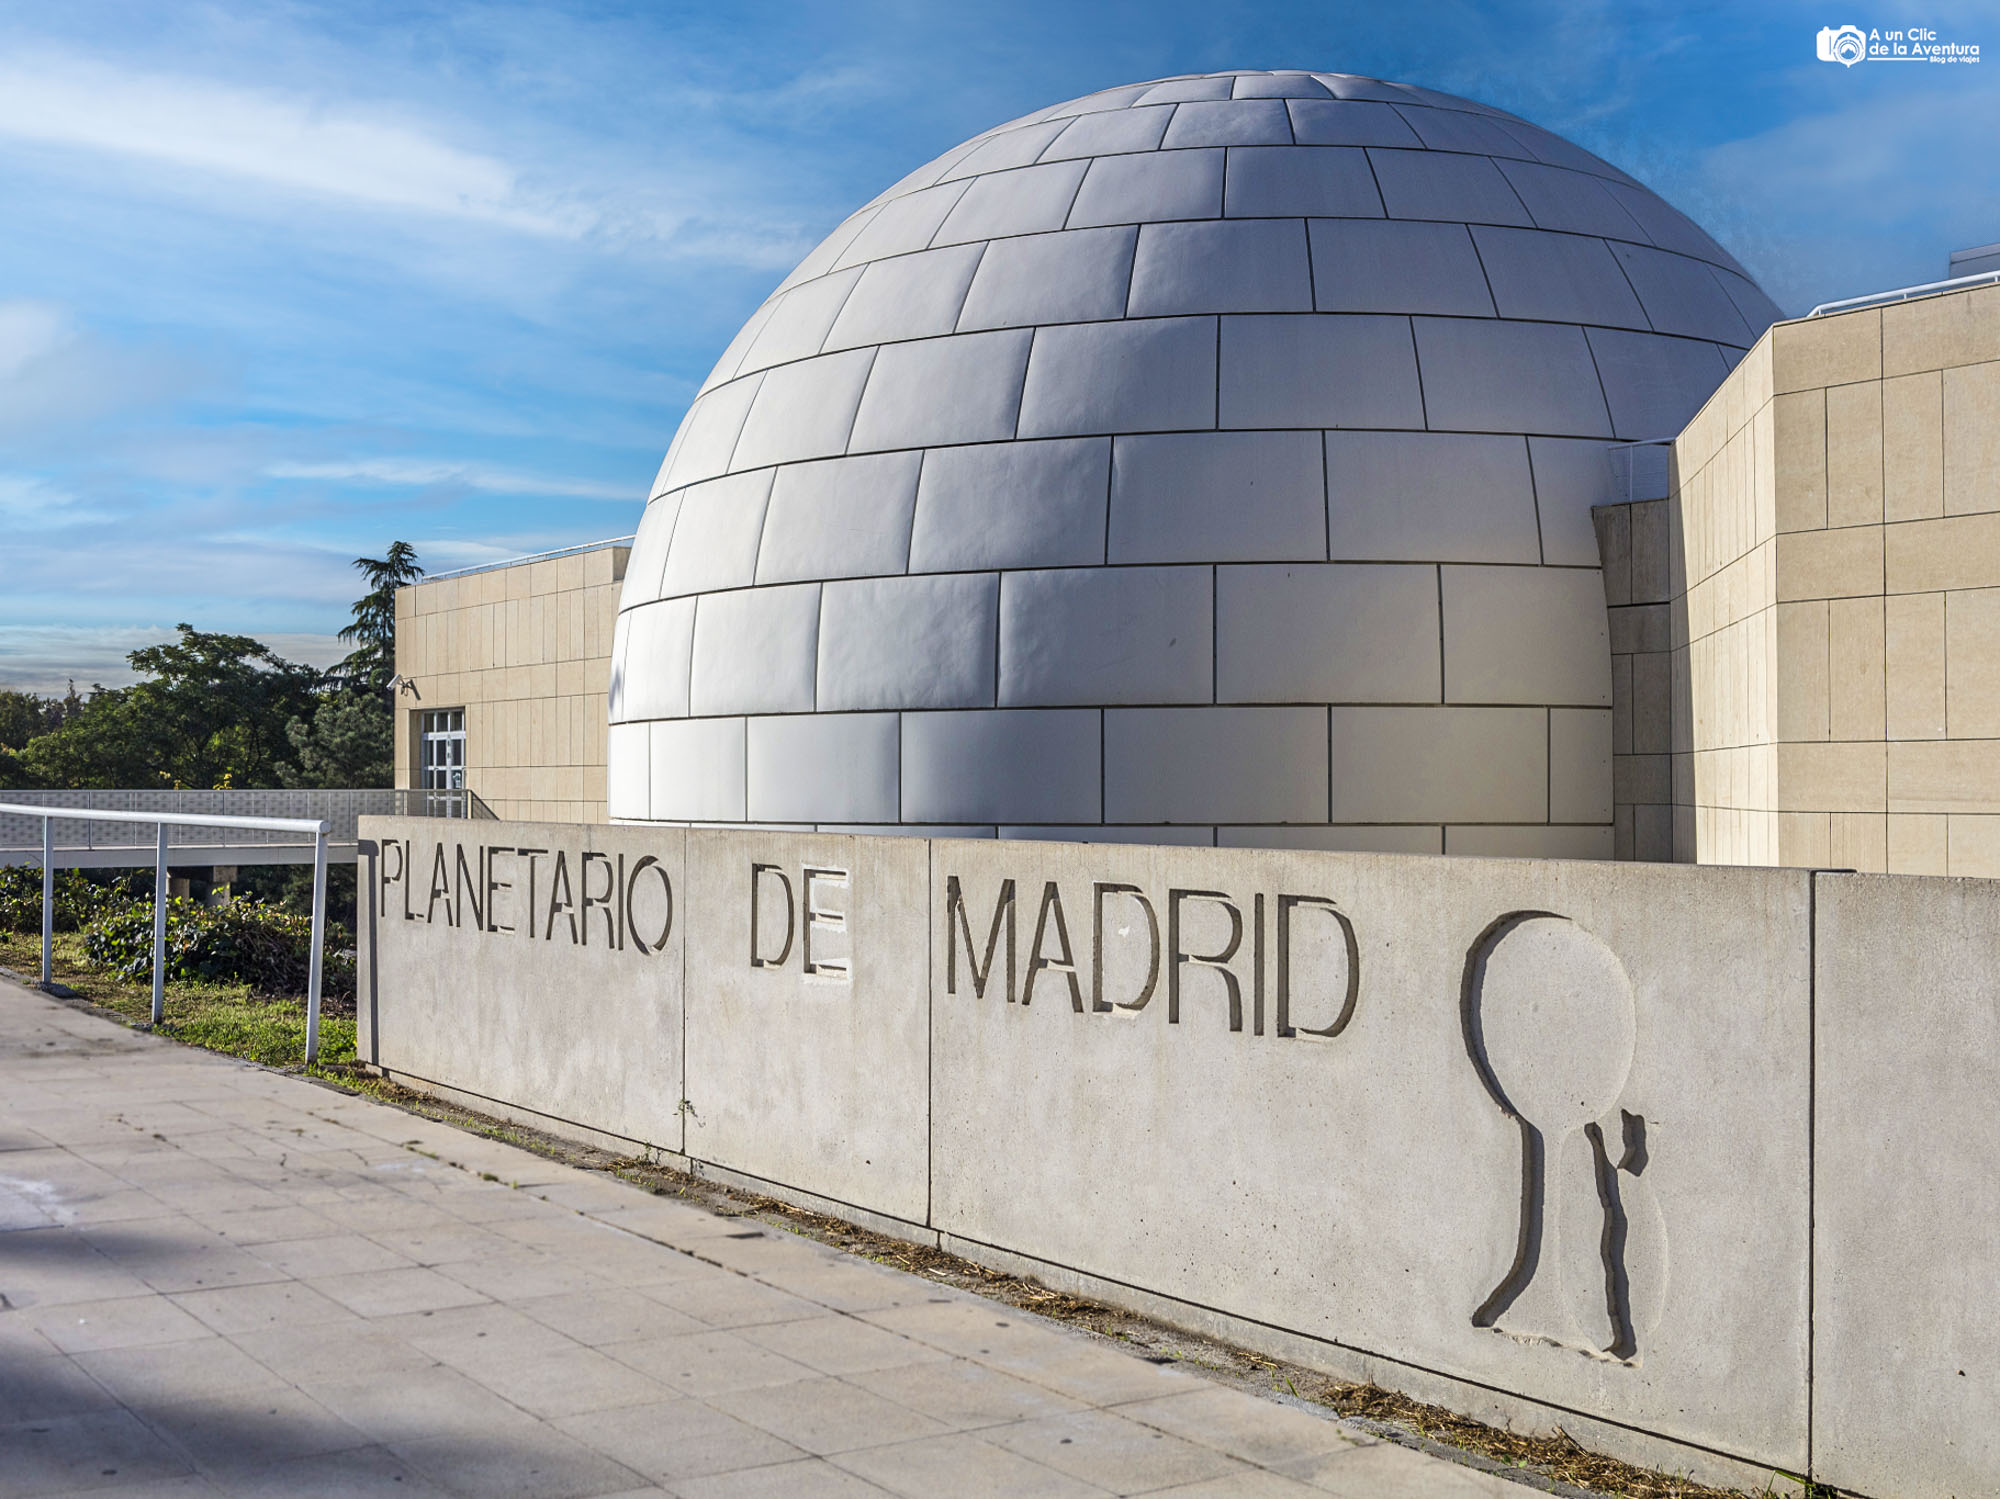 Planetario Madrid con niños